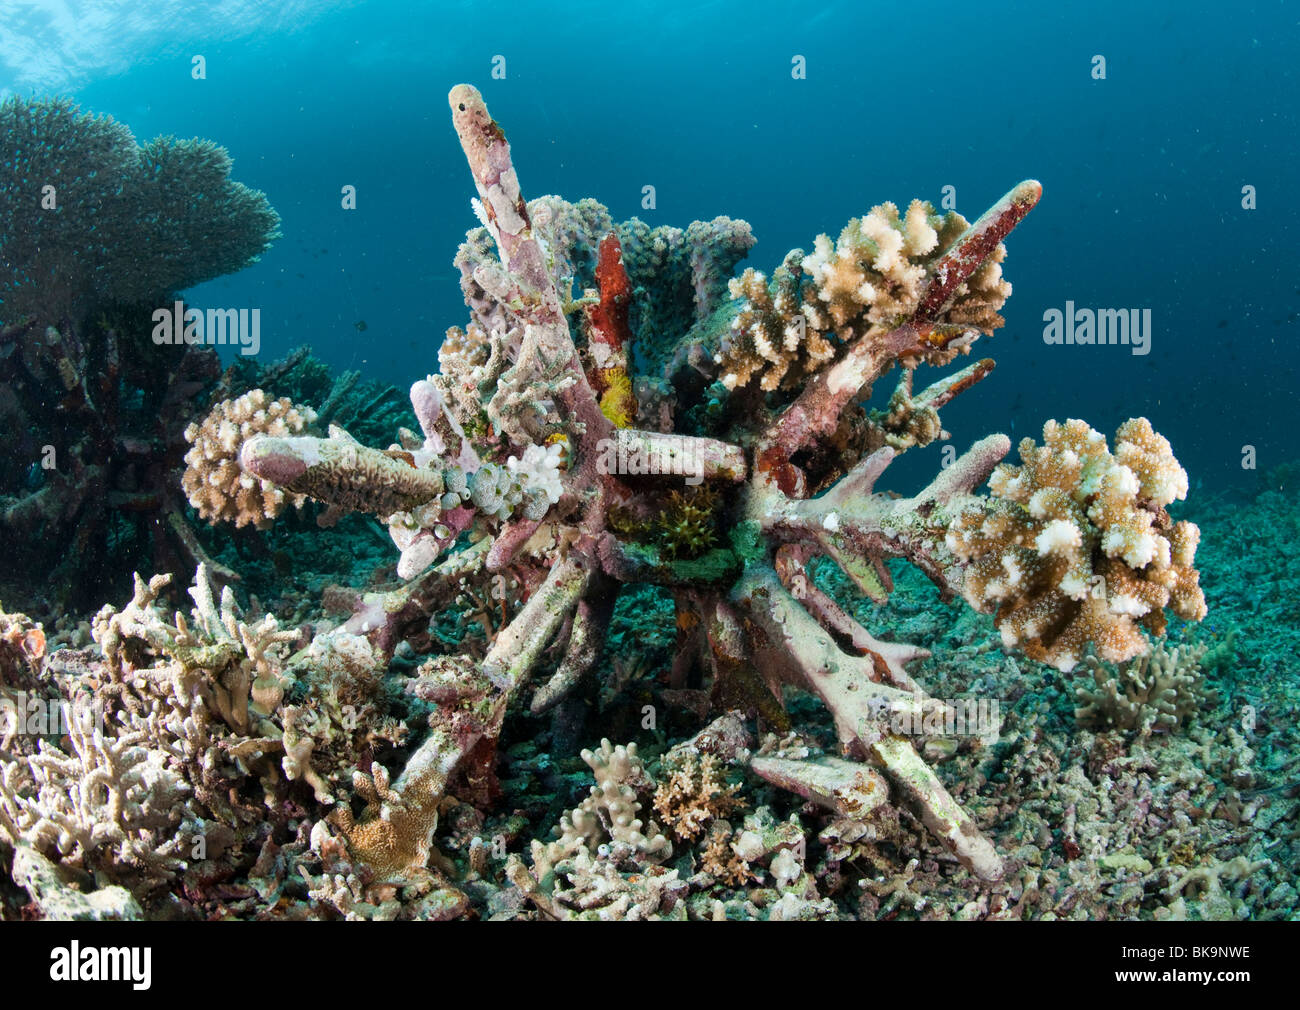 Programme de conservation des récifs coralliens Les récifs coralliens, les nouvelles doivent être créées par des blocs de béton, le parc national marin de Bunaken, Banque D'Images